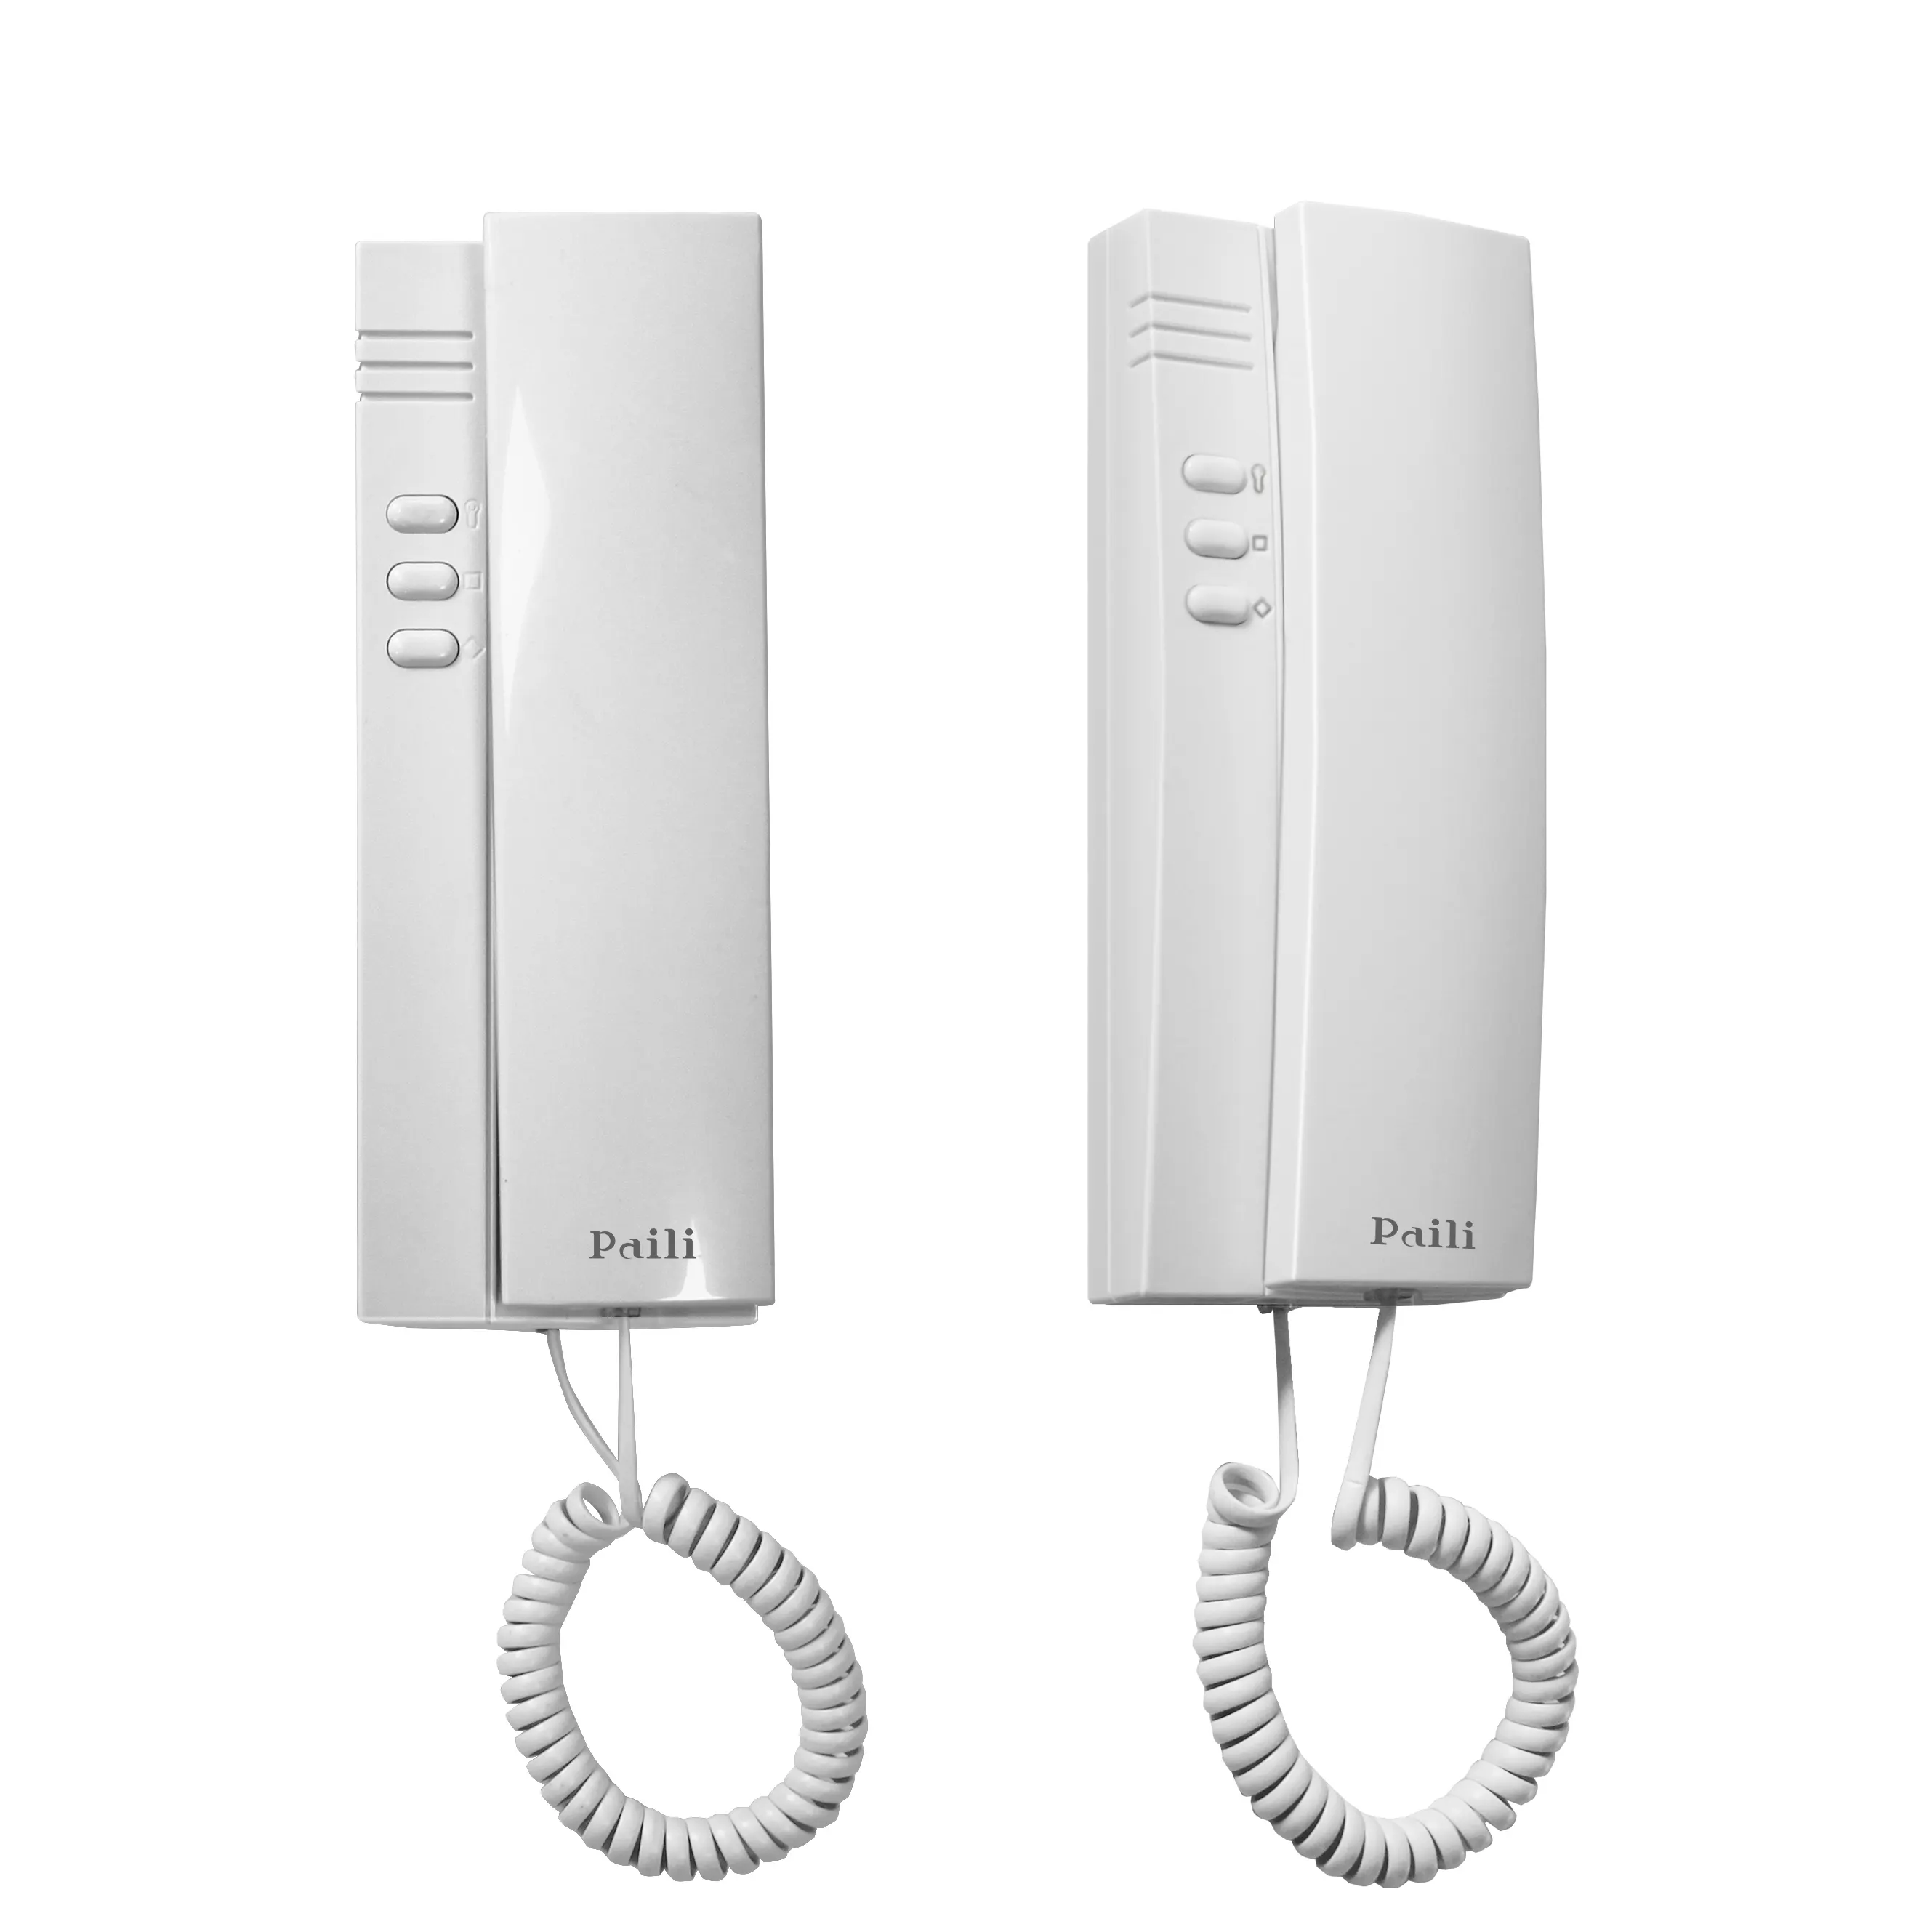 OEM Factory Audio Tür Telefon Innen telefon für Einzel-und Multi-Apartment Einfach zu installierende Handset Audio Tür Telefon Inter phone